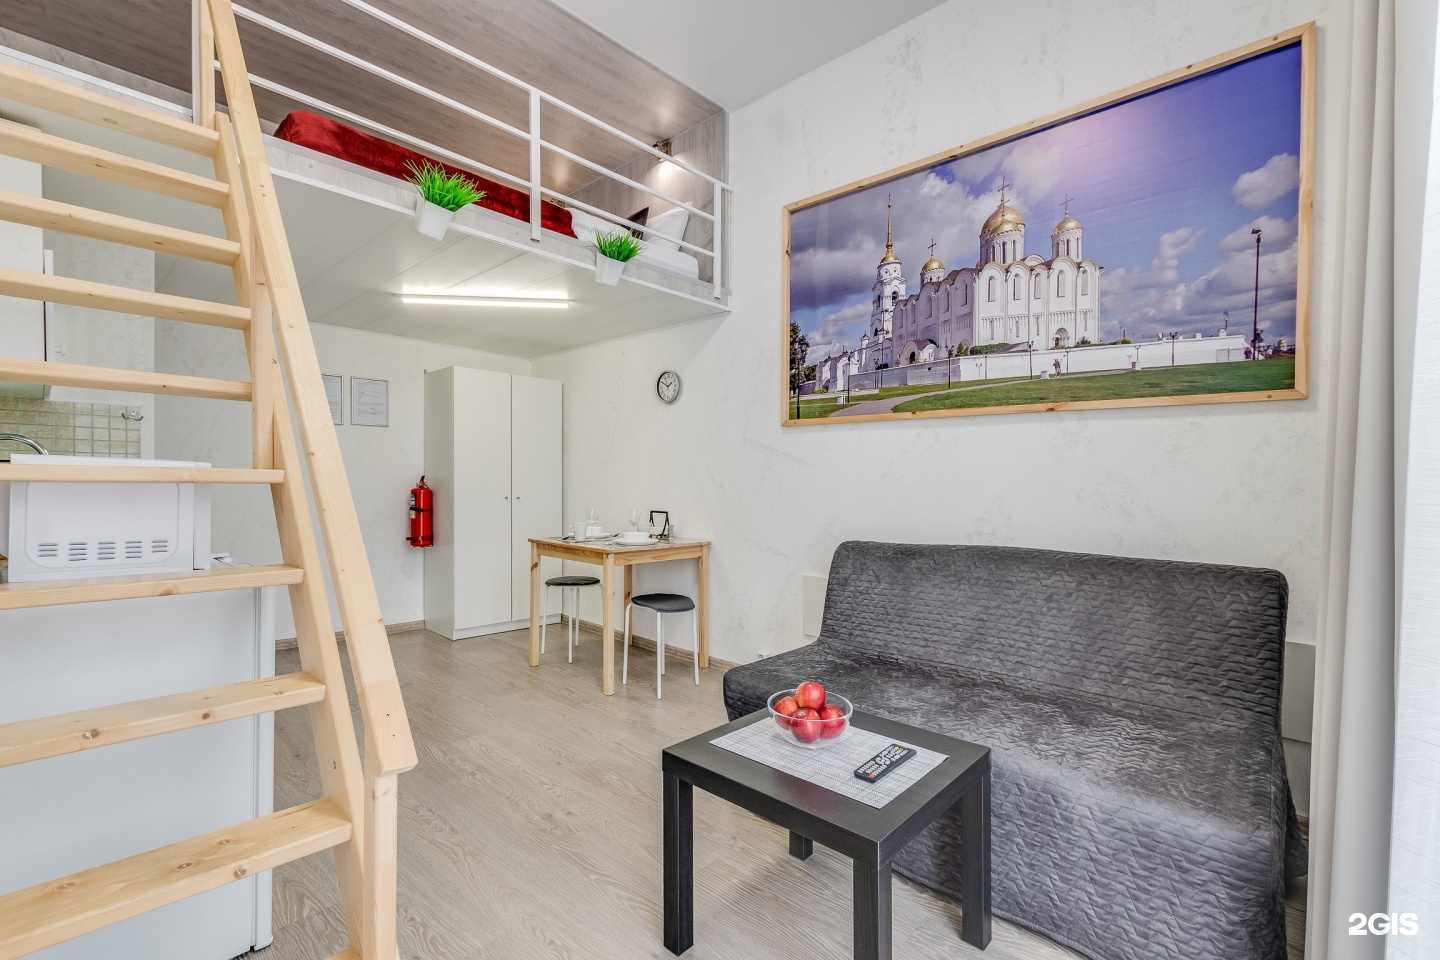 3 комнатные квартиры владимирская